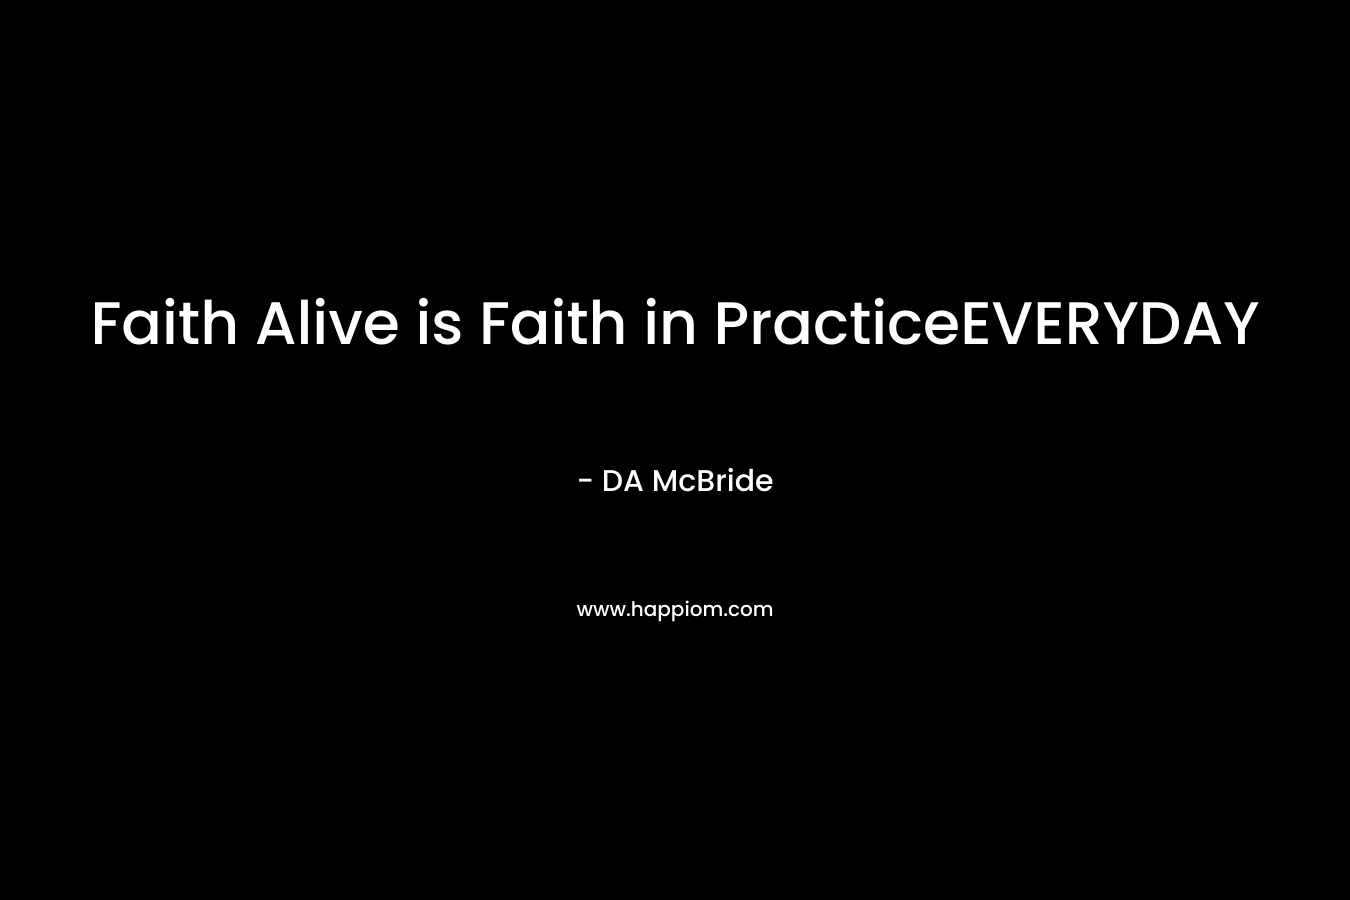 Faith Alive is Faith in PracticeEVERYDAY